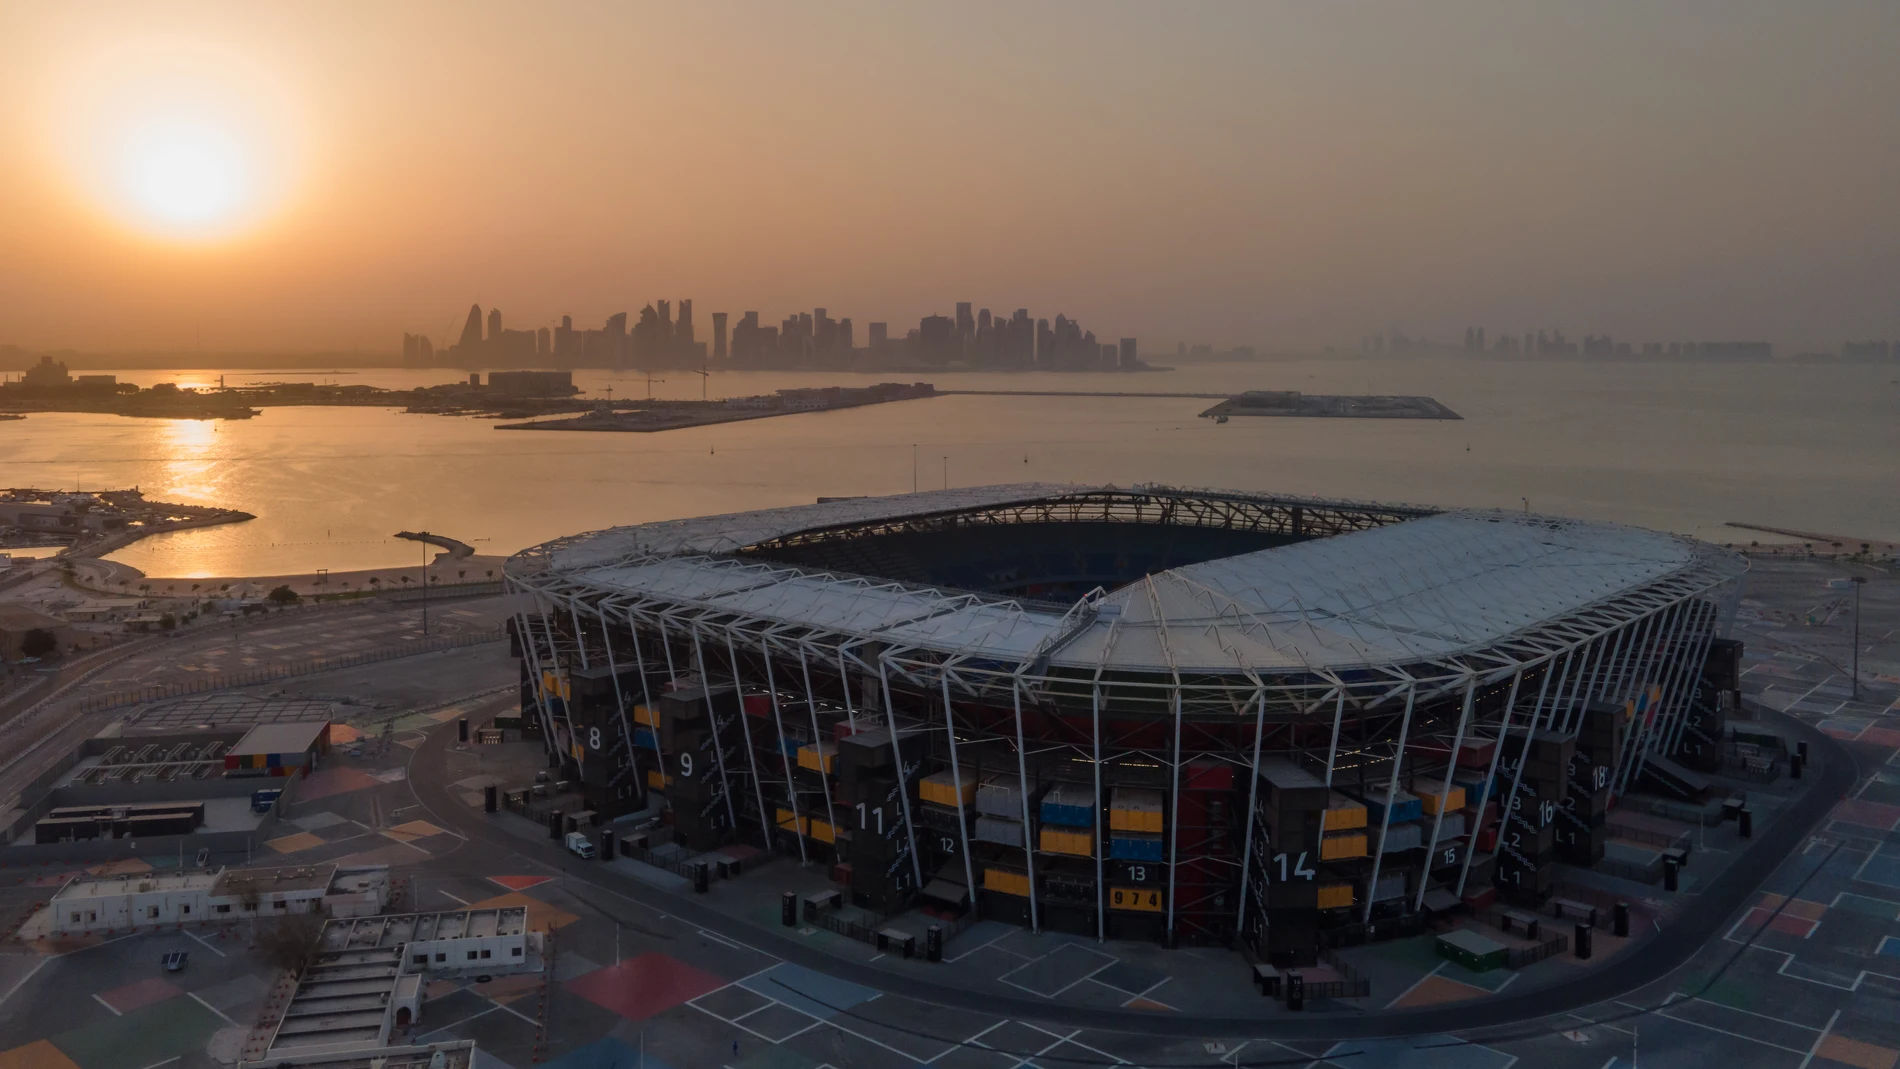 Vista aérea del estadio 974 de Doha